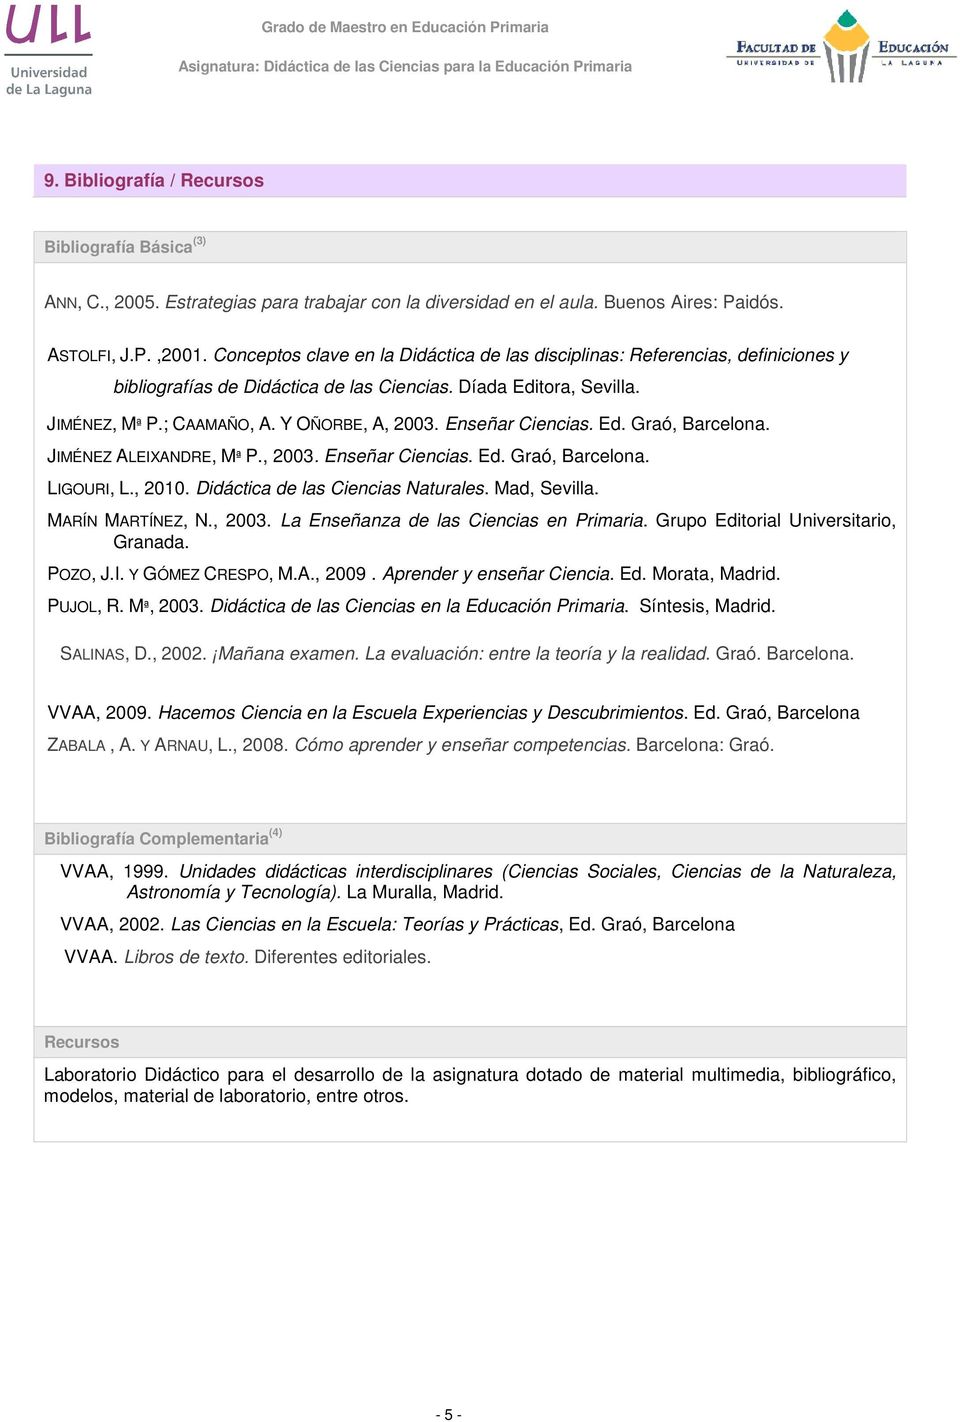 Enseñar Ciencias. Ed. Graó, Barcelona. JIMÉNEZ ALEIXANDRE, Mª P., 2003. Enseñar Ciencias. Ed. Graó, Barcelona. LIGOURI, L., 2010. Didáctica de las Ciencias Naturales. Mad, Sevilla. MARÍN MARTÍNEZ, N.